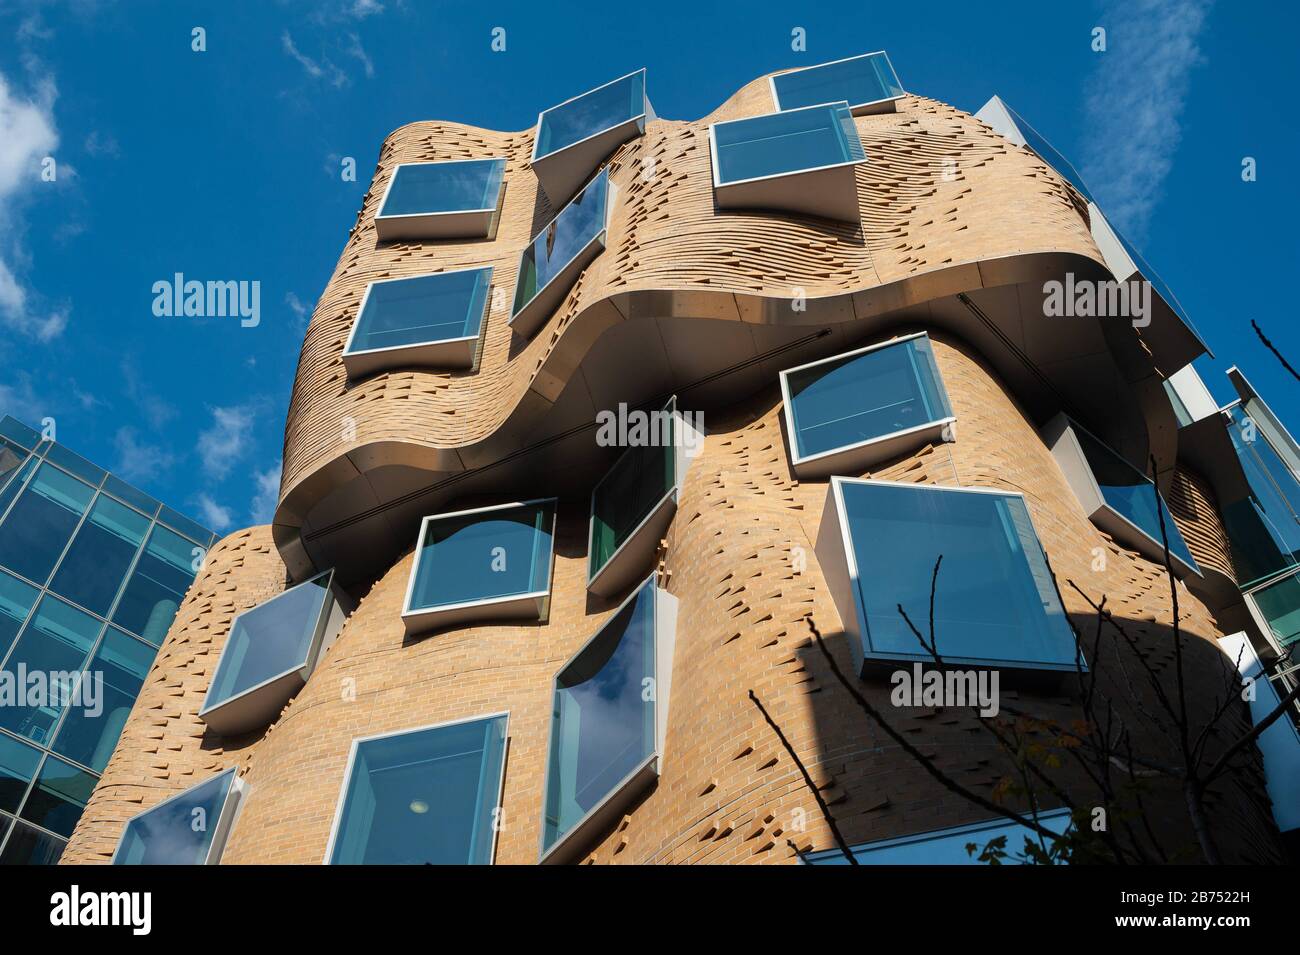 26.09.2019, Sydney, New South Wales, Australien - Dr Chau Chak Wing Building, in dem sich die Business School der Technischen Universität UTS befindet, die von Frank Gehry AUF REDAKTIONELLE VERWENDUNG beschränkt wurde - OBLIGATORISCHE ERWÄHNUNG DES KÜNSTLERS BEI VERÖFFENTLICHUNG. NUR FÜR REDAKTIONELLE ZWECKE - ERWÄHNUNG DES INTERPRETEN OBLIGATORISCH [AUTOMATISIERTE ÜBERSETZUNG] Stockfoto